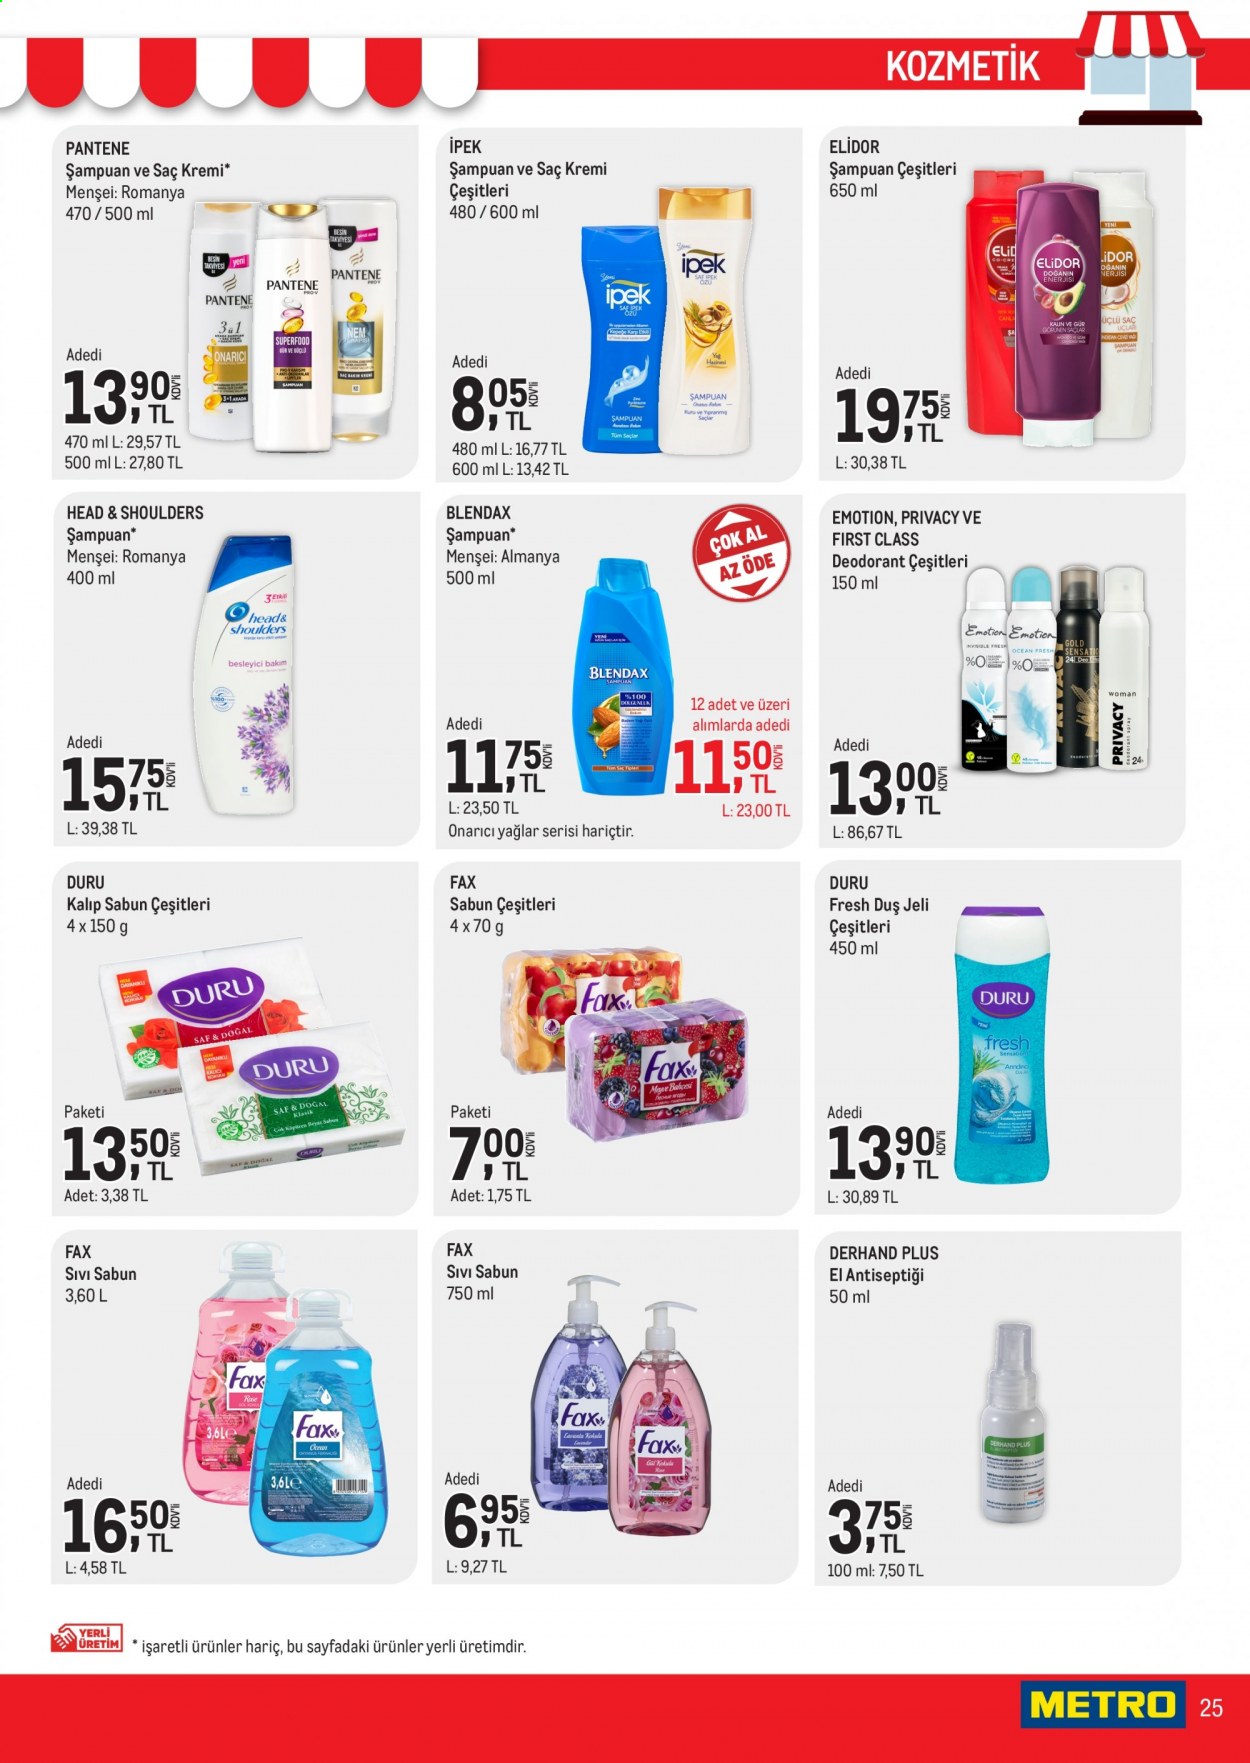 thumbnail - Metro aktüel ürünler, broşür  - 7.1.2021 - 7.15.2021 - Satıştaki ürünler - sabun, şampuan, sıvı sabunu, Head & Shoulders, duş jeli, kremi, saç kremi, Pantene, deodorant. Sayfa 25.